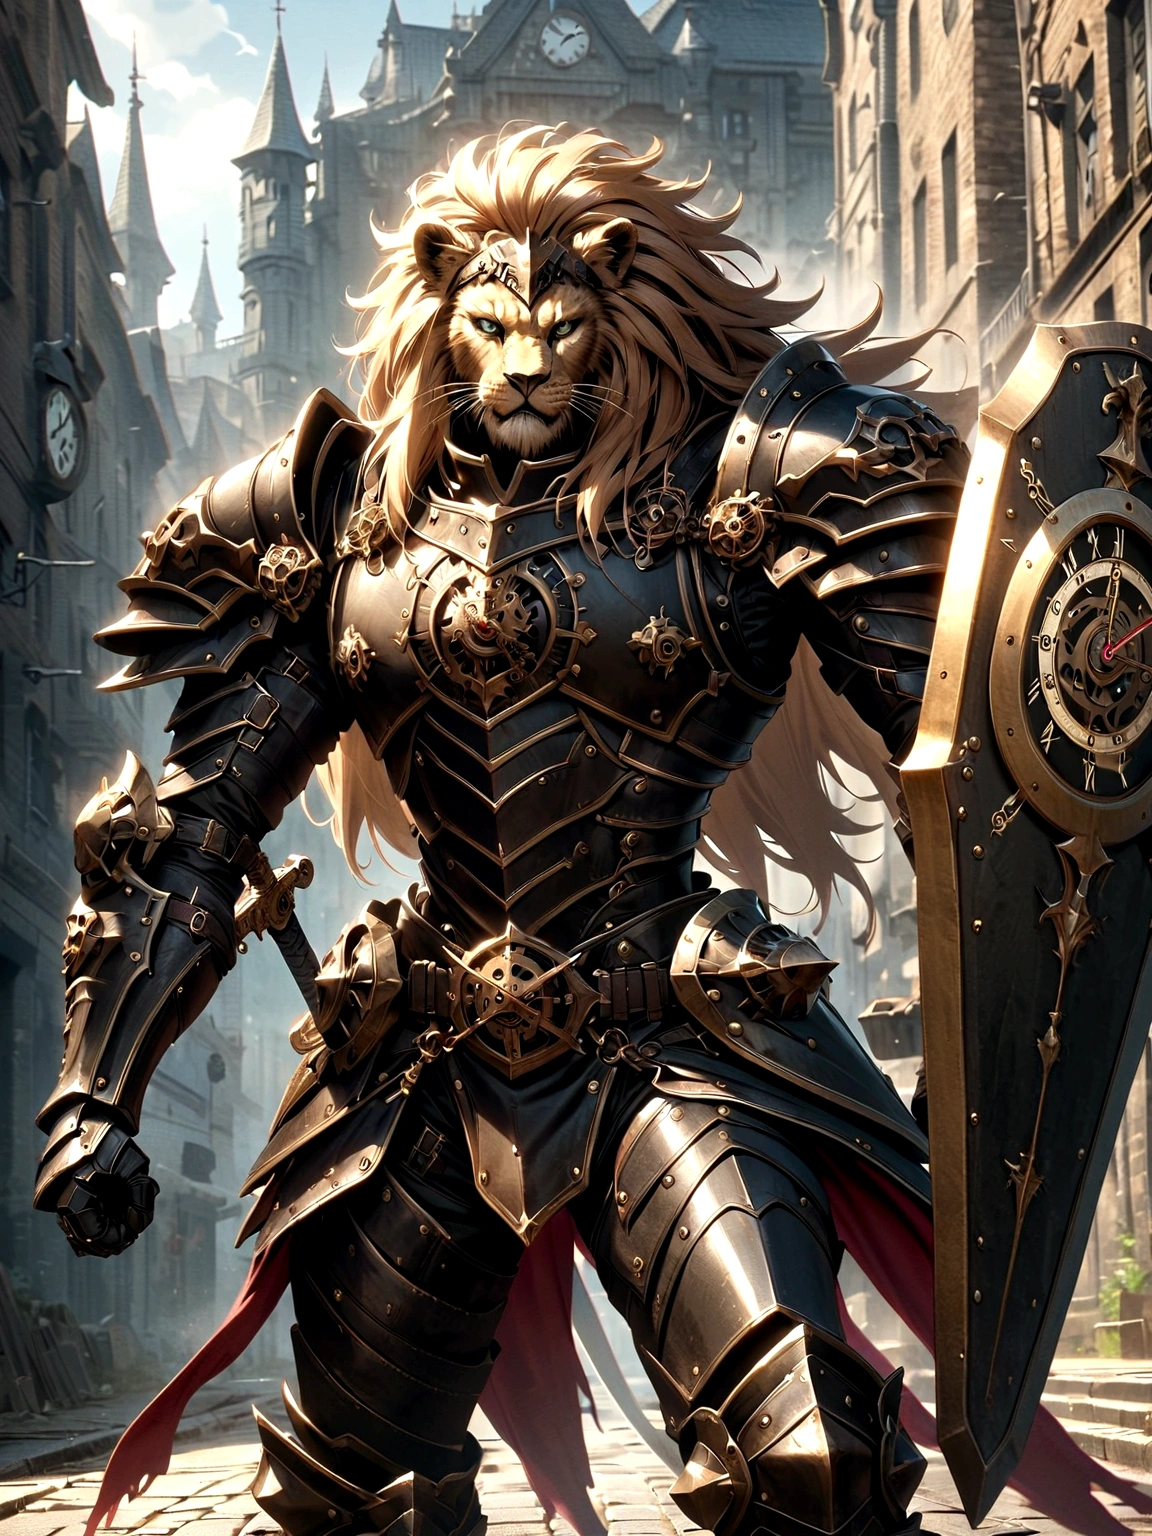 Löwenritter in Kampfuniform, auf der Strasse, schwarze Rüstung, Uhrendesigns, Schwarzer Löwenmann, Schwarze Rüstung, Schwert und Schild